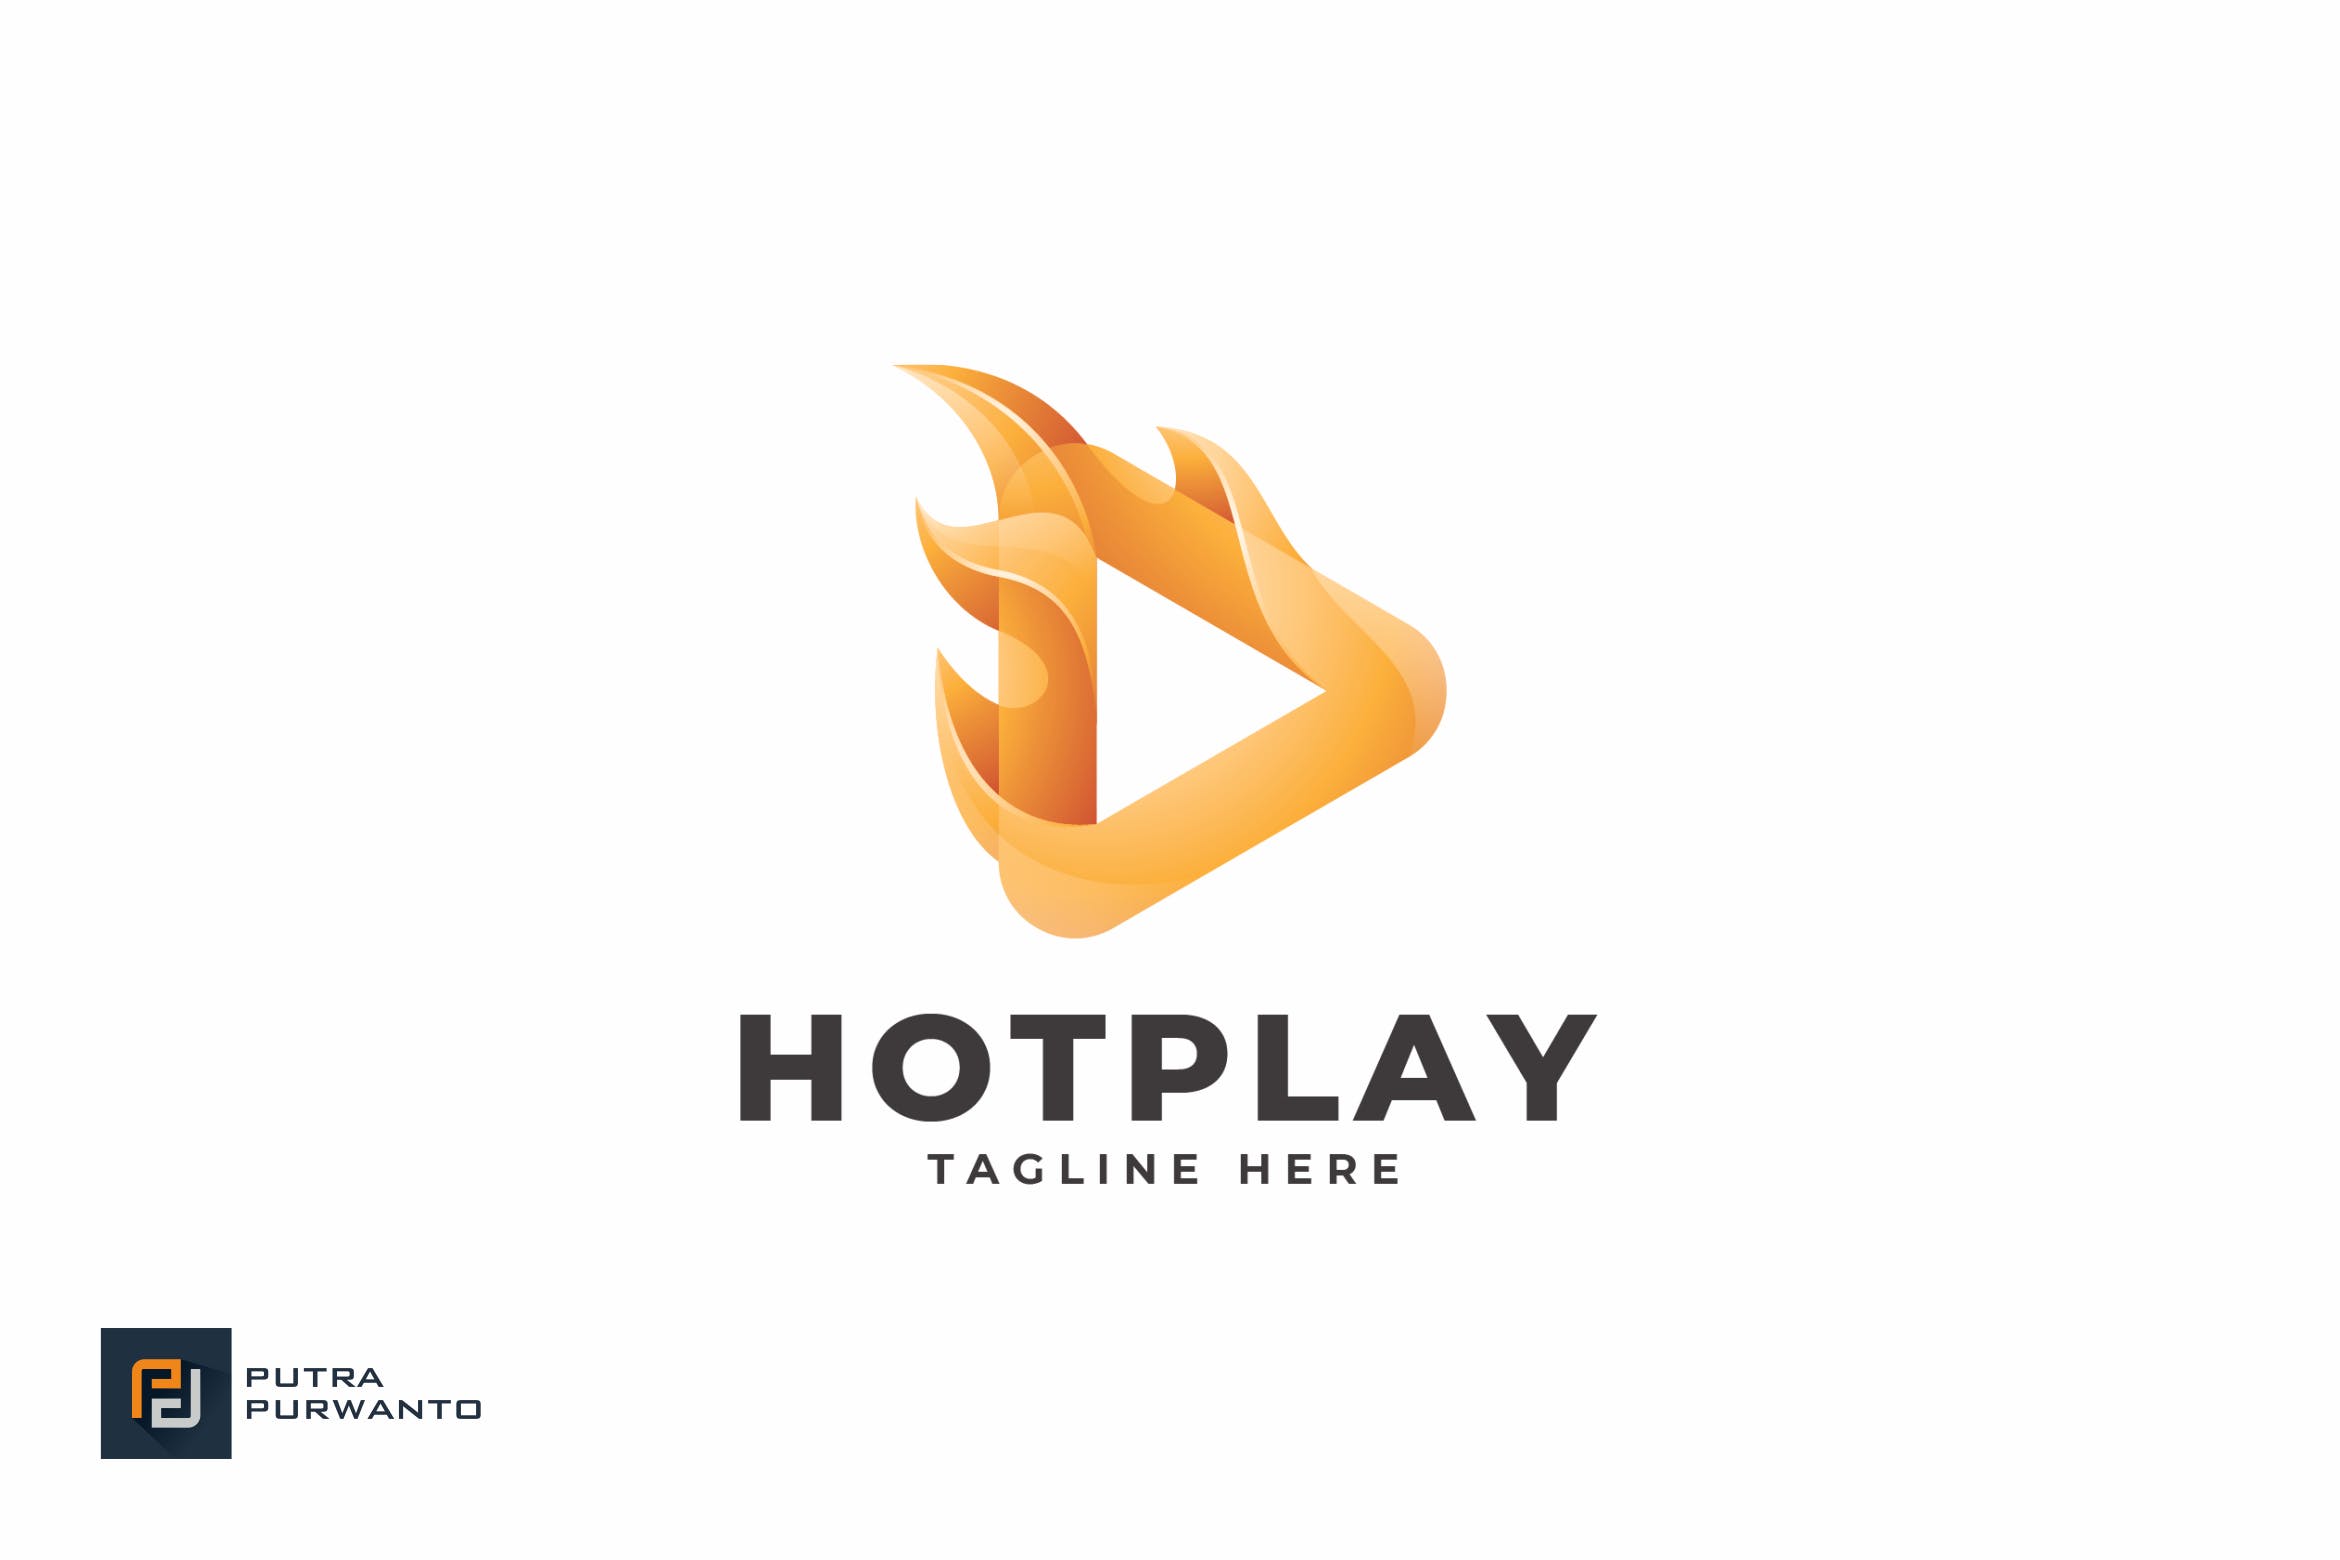 播放器/多媒体品牌Logo设计素材中国精选模板 Hot Play – Logo Template插图